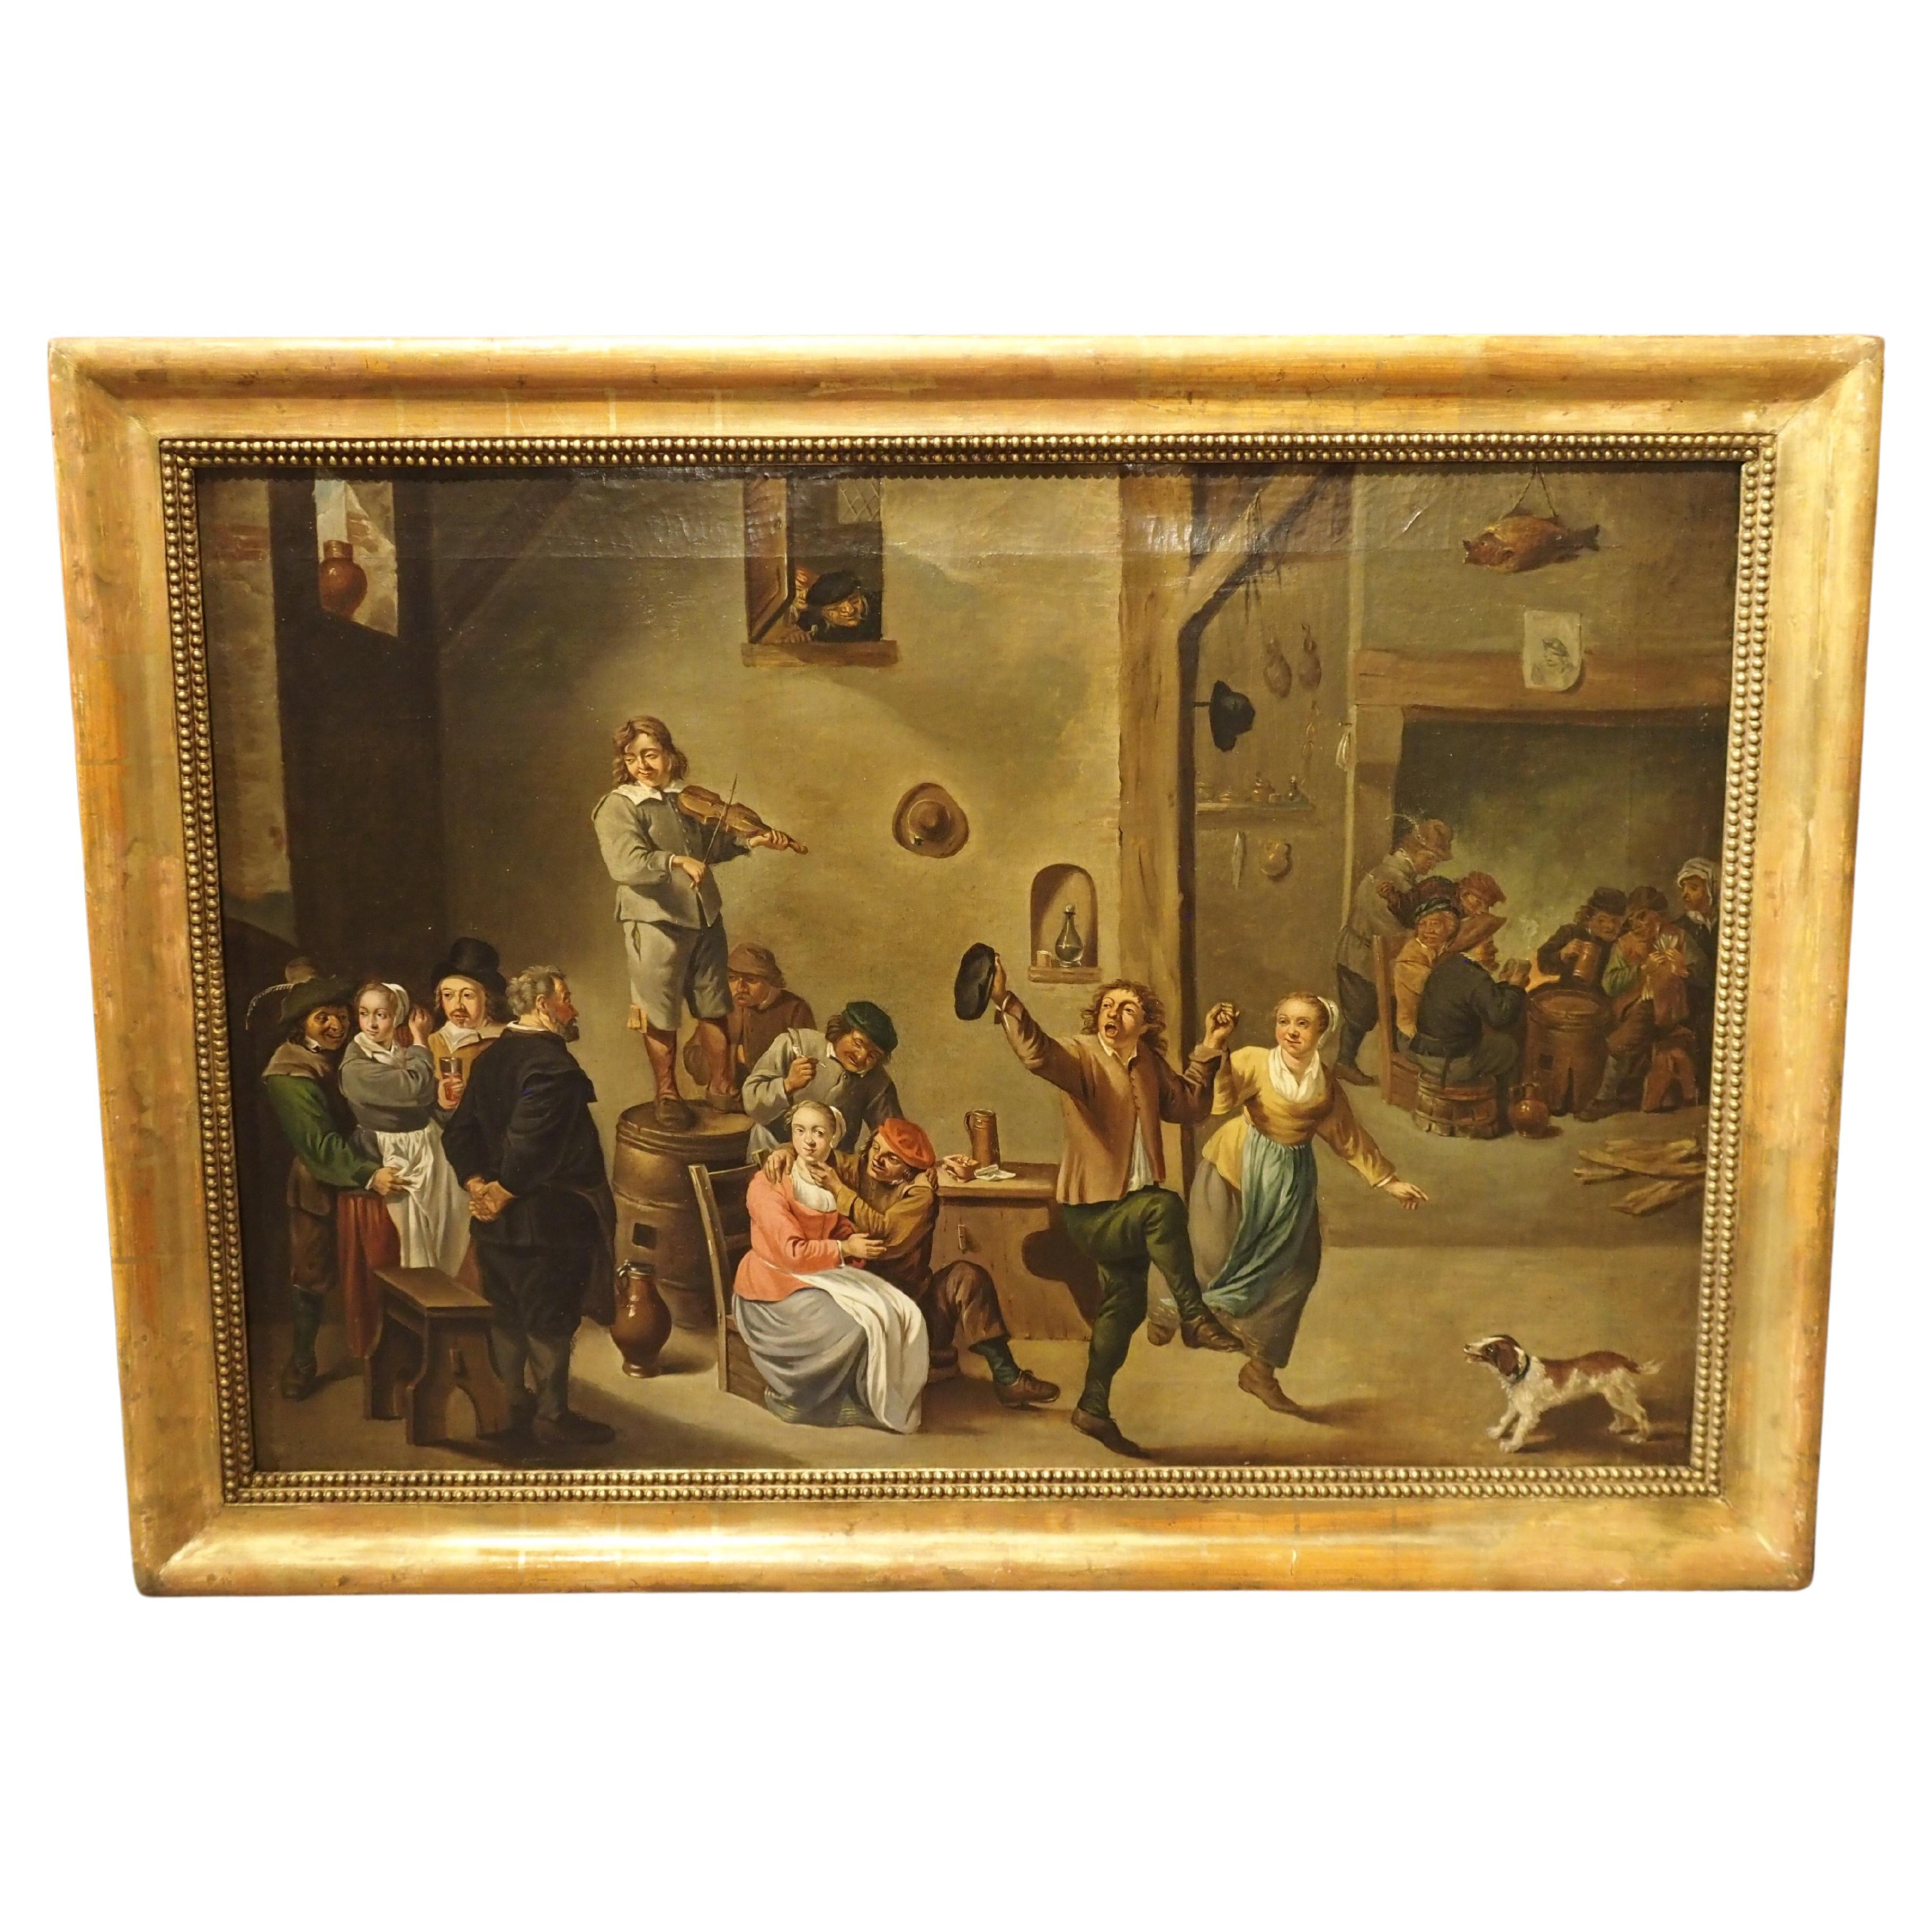 Peinture à l'huile sur toile ancienne, intérieur d'une auberge avec paysans dansant, 18e siècle